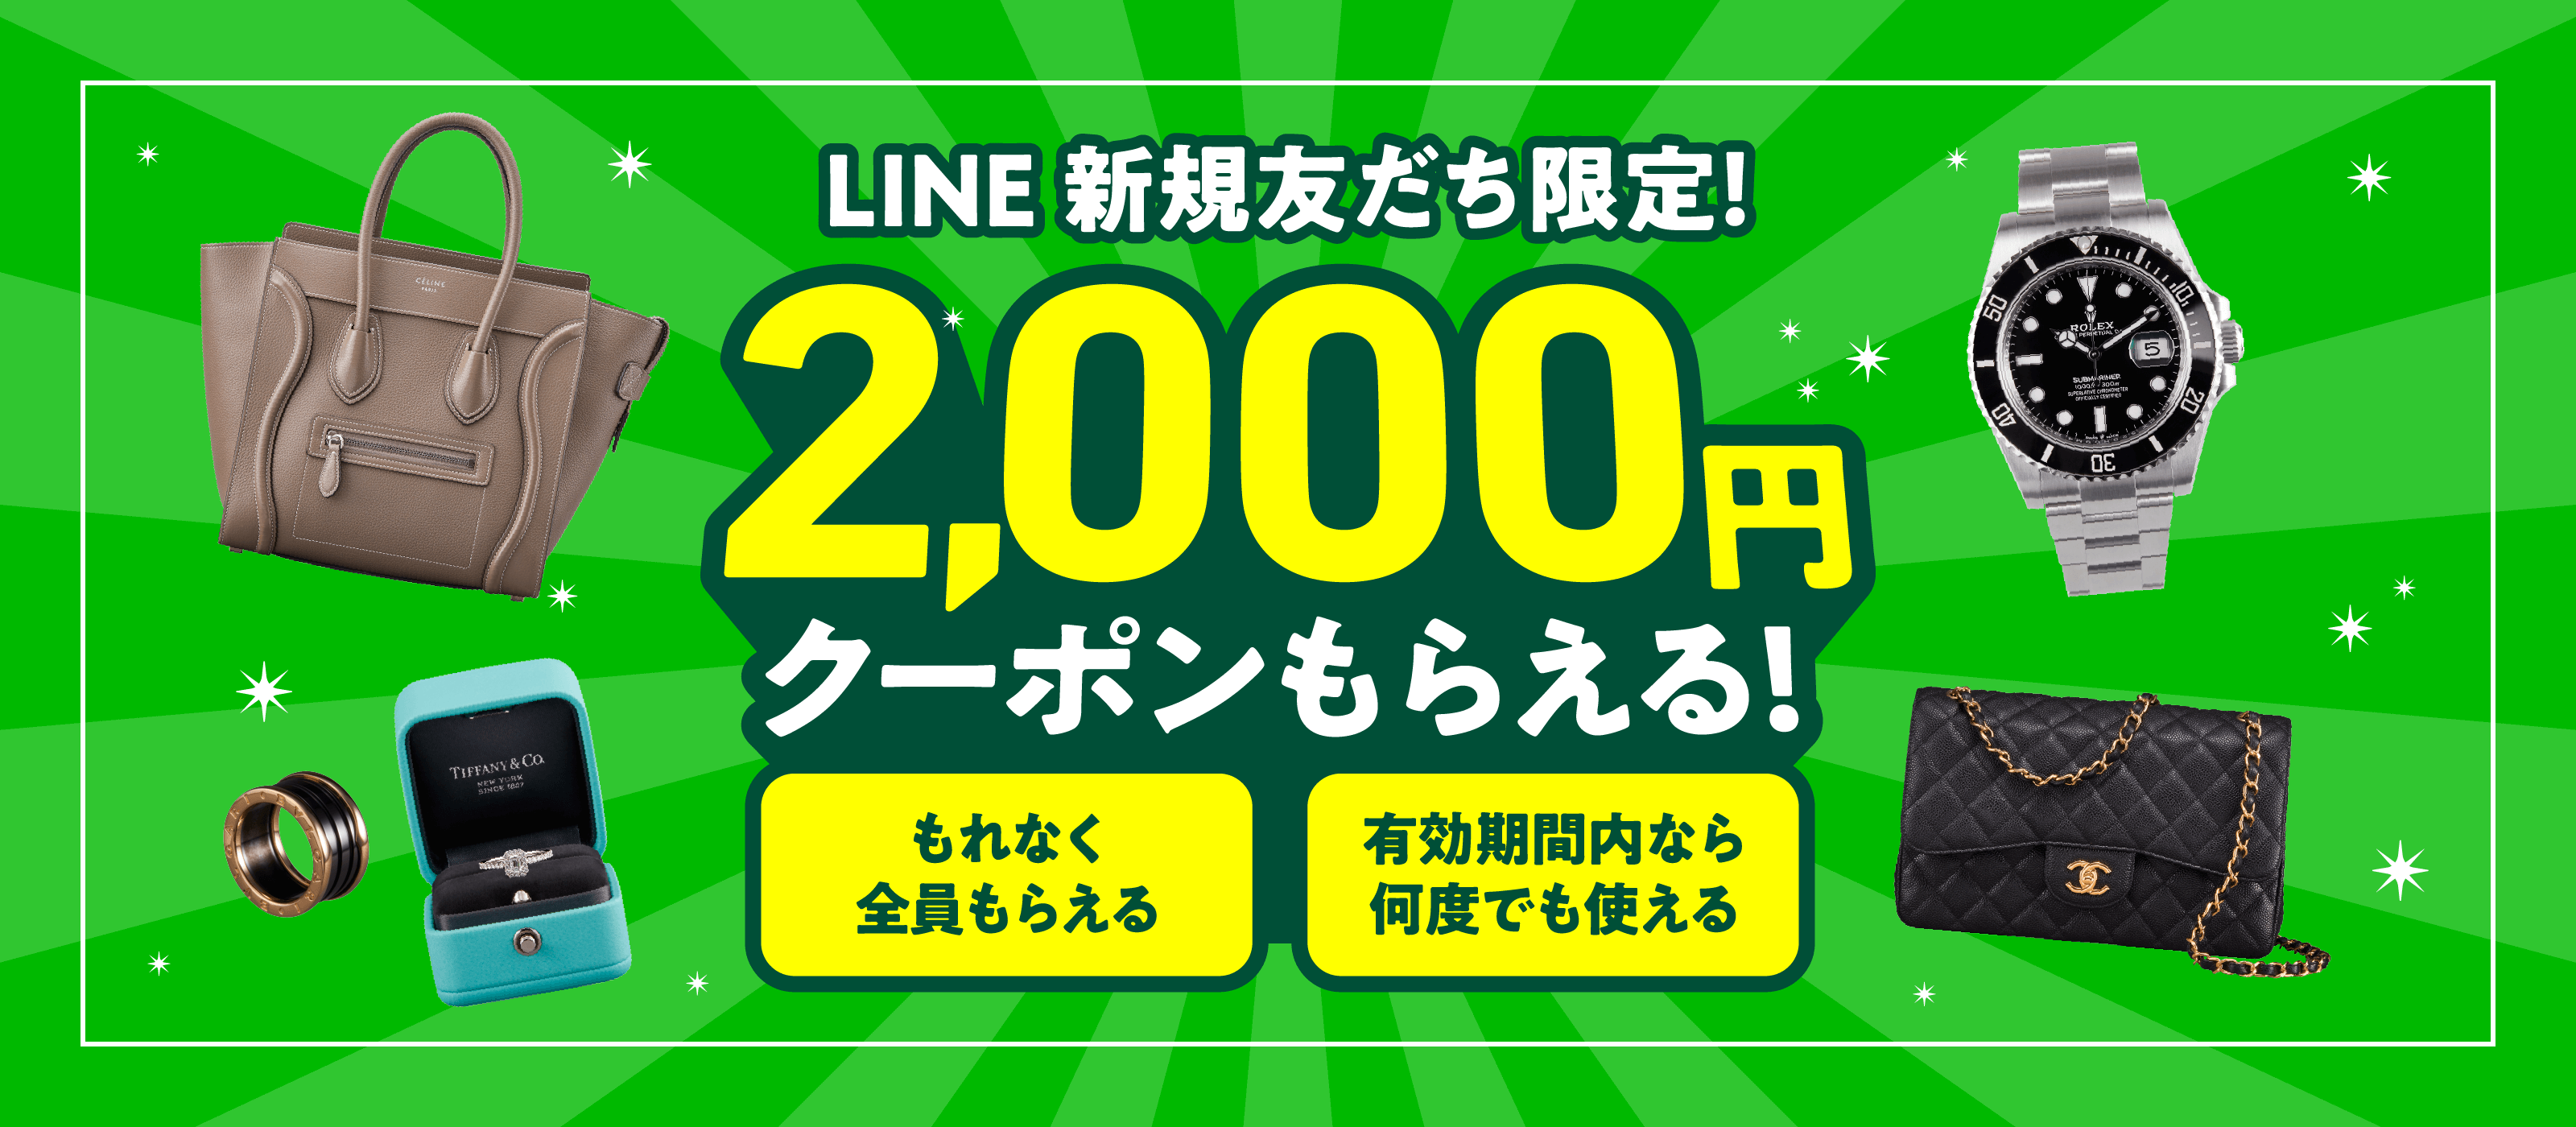 LINE公式アカウント 新規LINE友だち登録&1万円以上お買取成立で現金2,000円もらえるクーポンプレゼント！もれなく全員にプレゼント 有効期限内なら何度でも使える